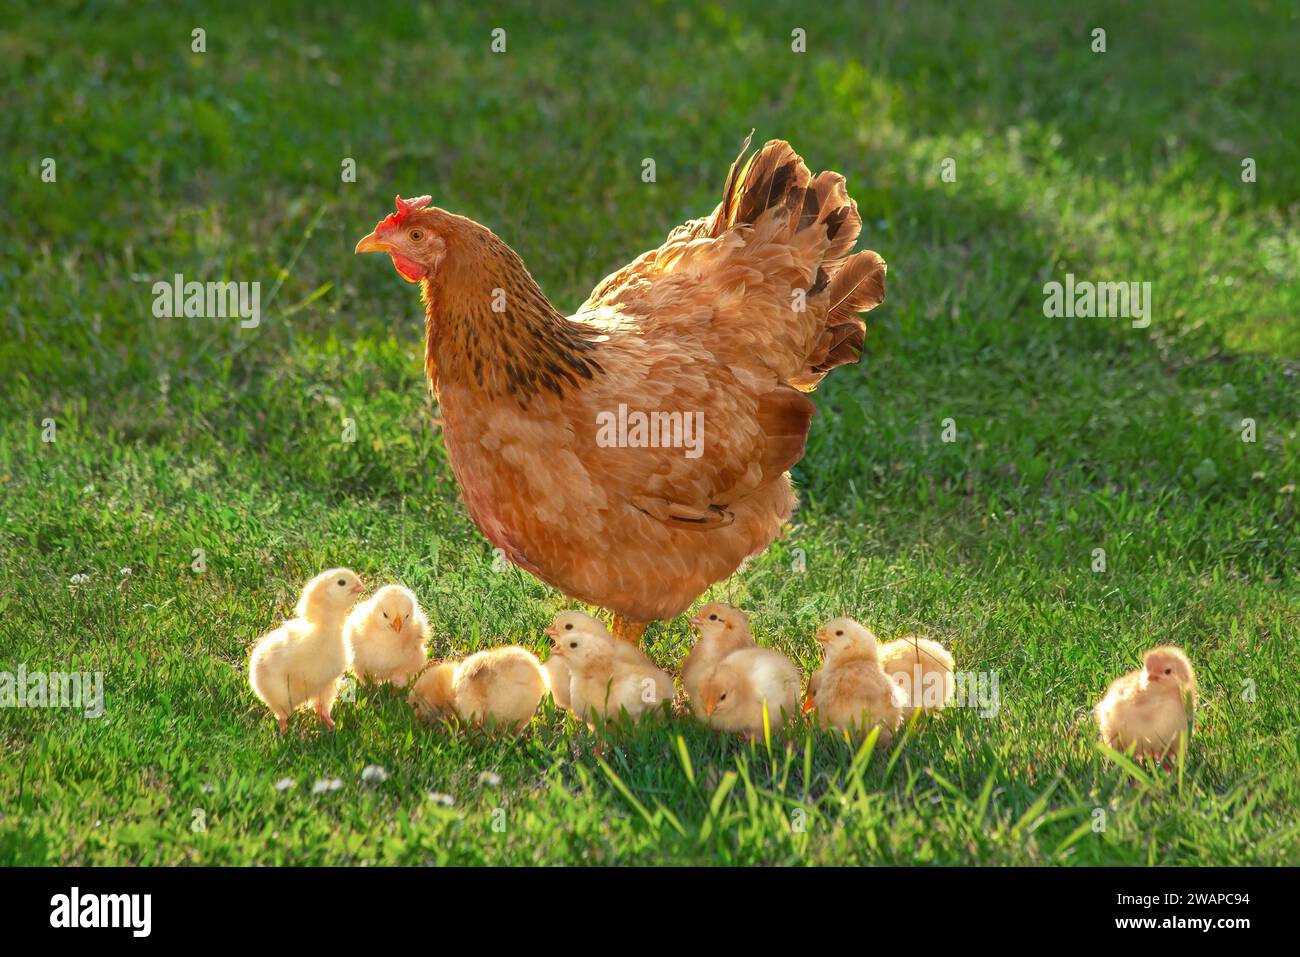 Poule en liberté avec des poussins dans une cour rurale. Poule et poules dans une herbe dans une ferme contre des photos de soleil. Gallus gallus domesticus. Ferme biologique de volaille. Banque D'Images